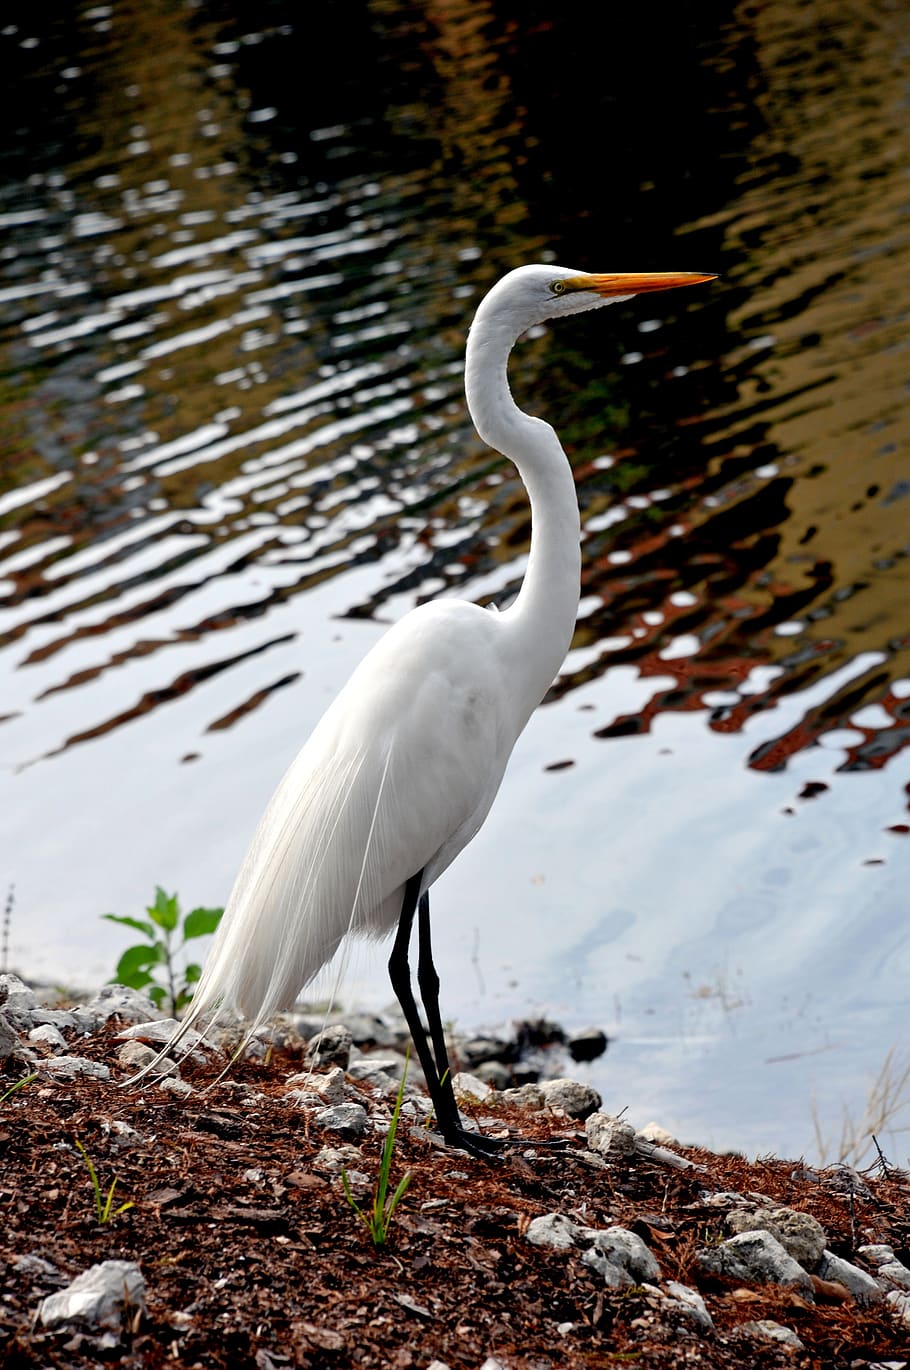 pássaro branco lindo, sociedade audubon, everglades da Flórida, pássaro, everglades, vida selvagem, selvagem, branco, garça, animal